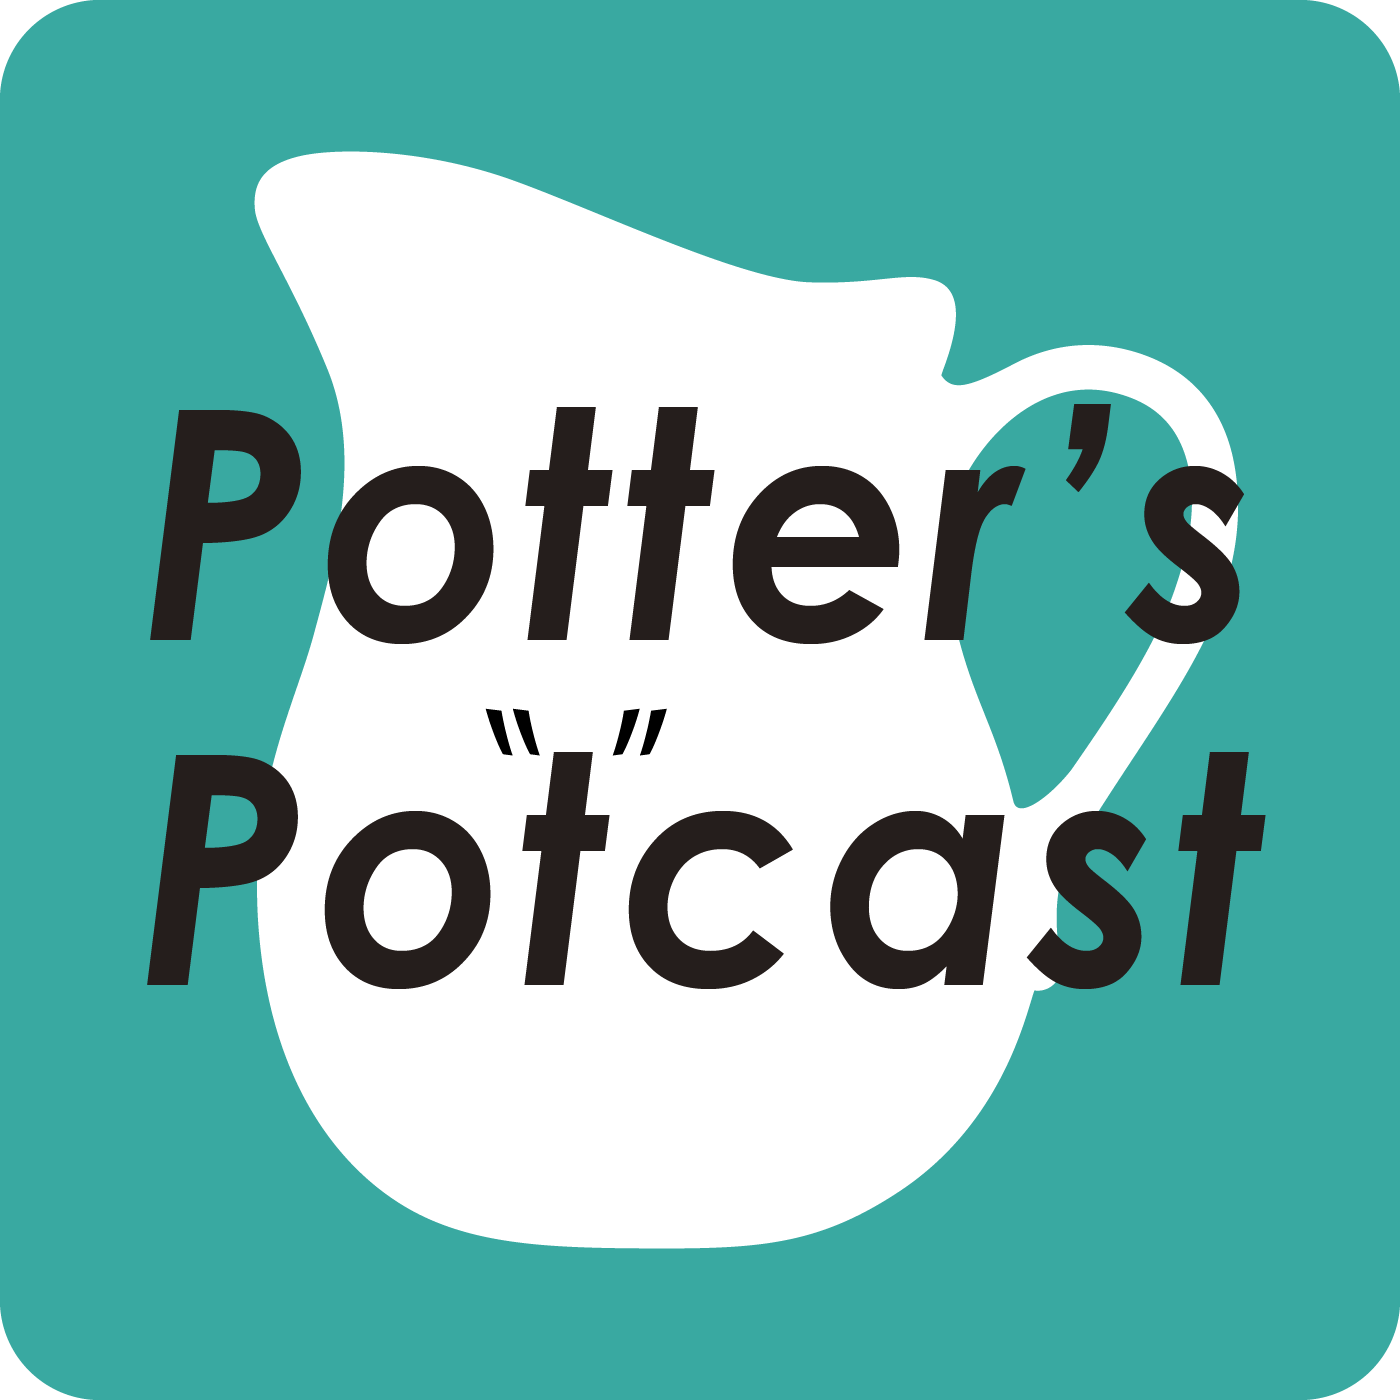 Potter's Po"t"cast